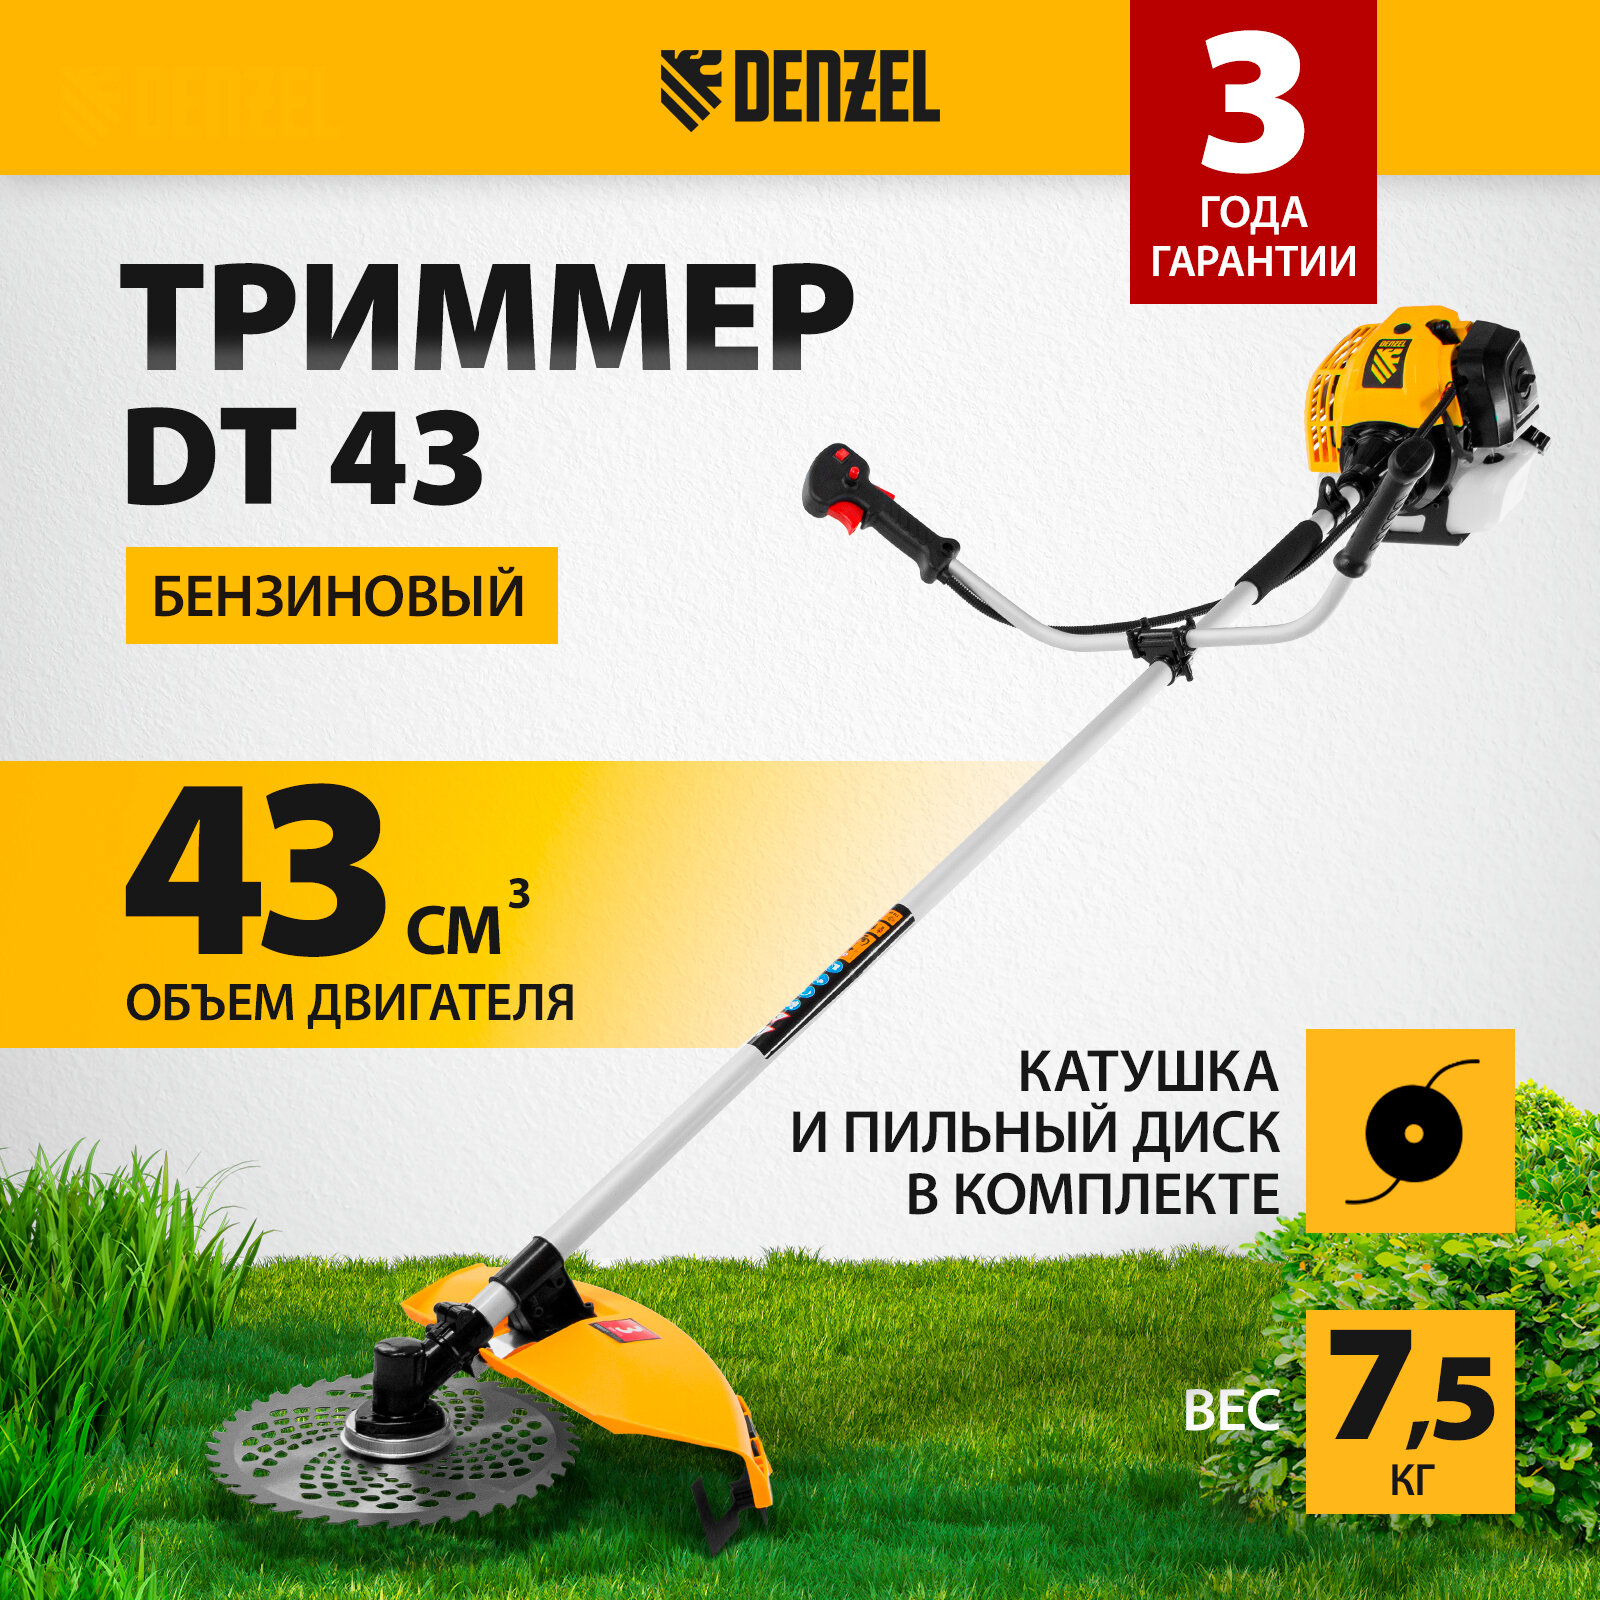 Триммер бензиновый Denzel DT 43 2.5 л.с. 42 см